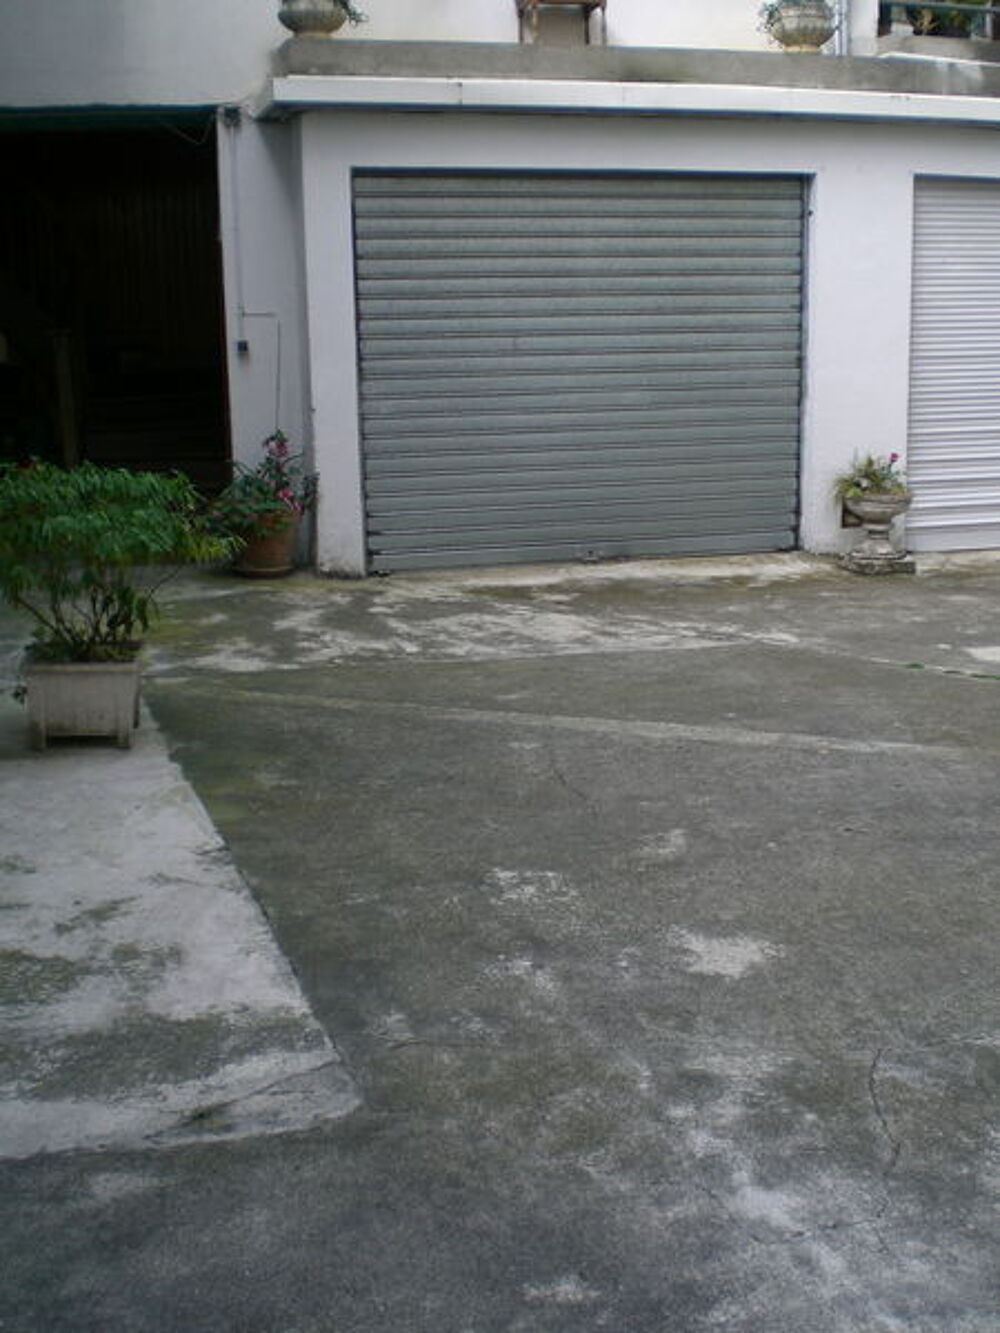 Location Parking/Garage Garage Ferm 
proximit  des Halles Pau Pau